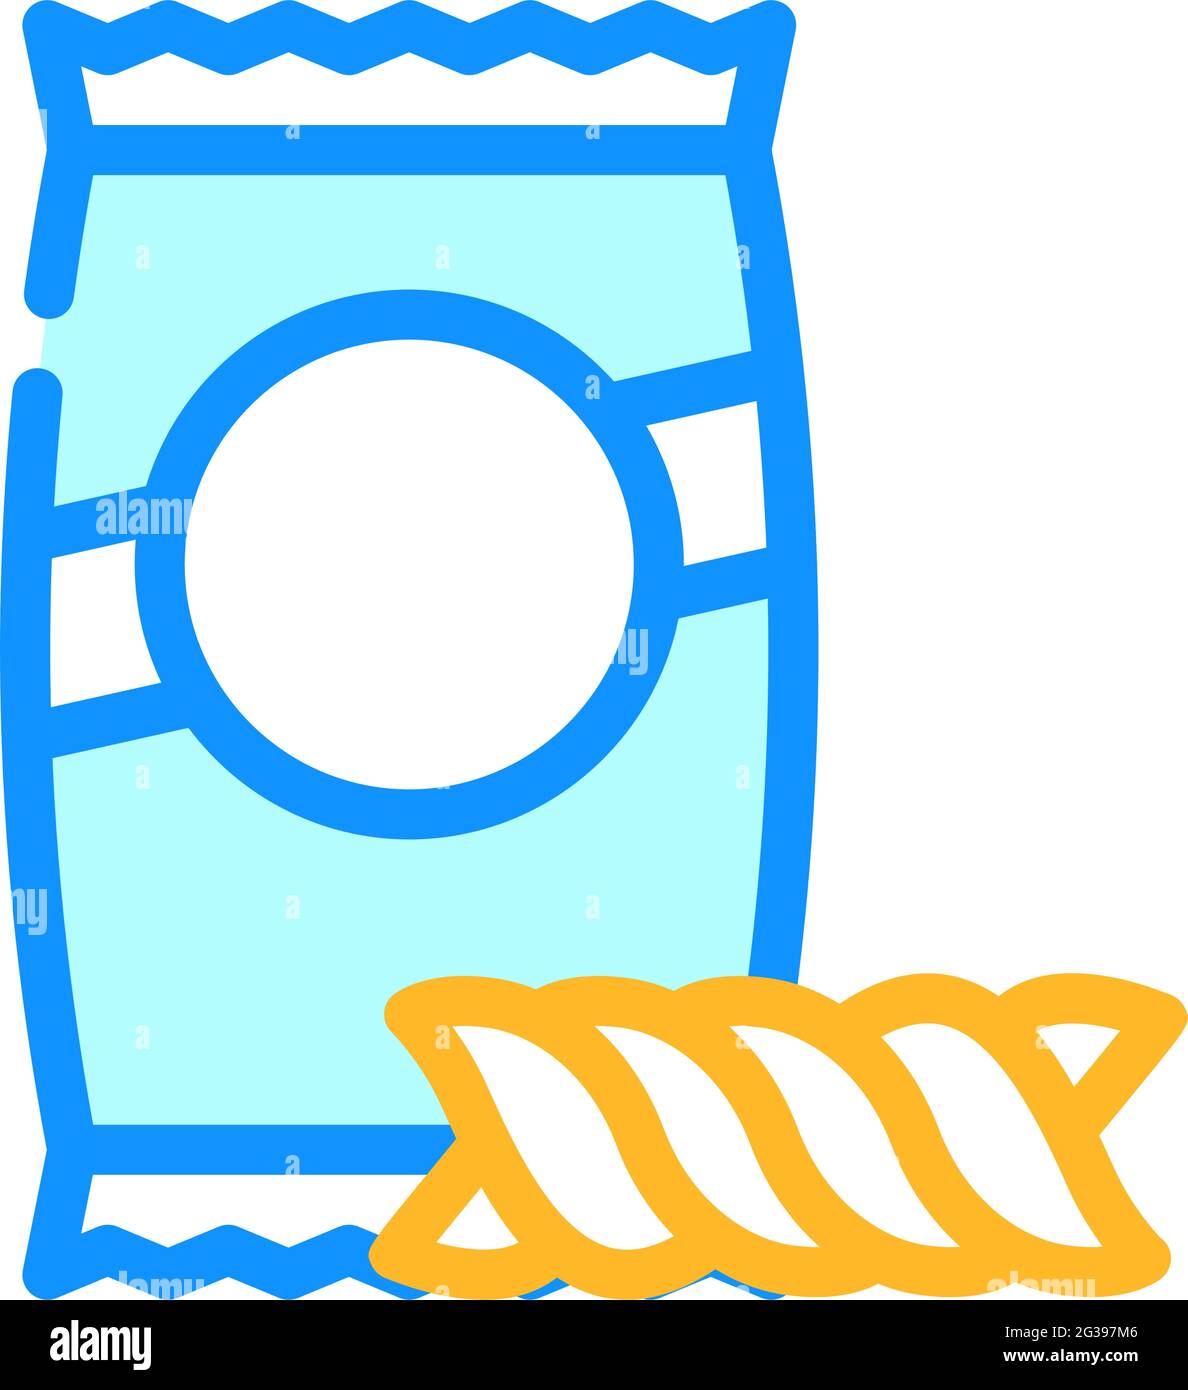 torchietti pasta color icon vector illustration Stock Vector